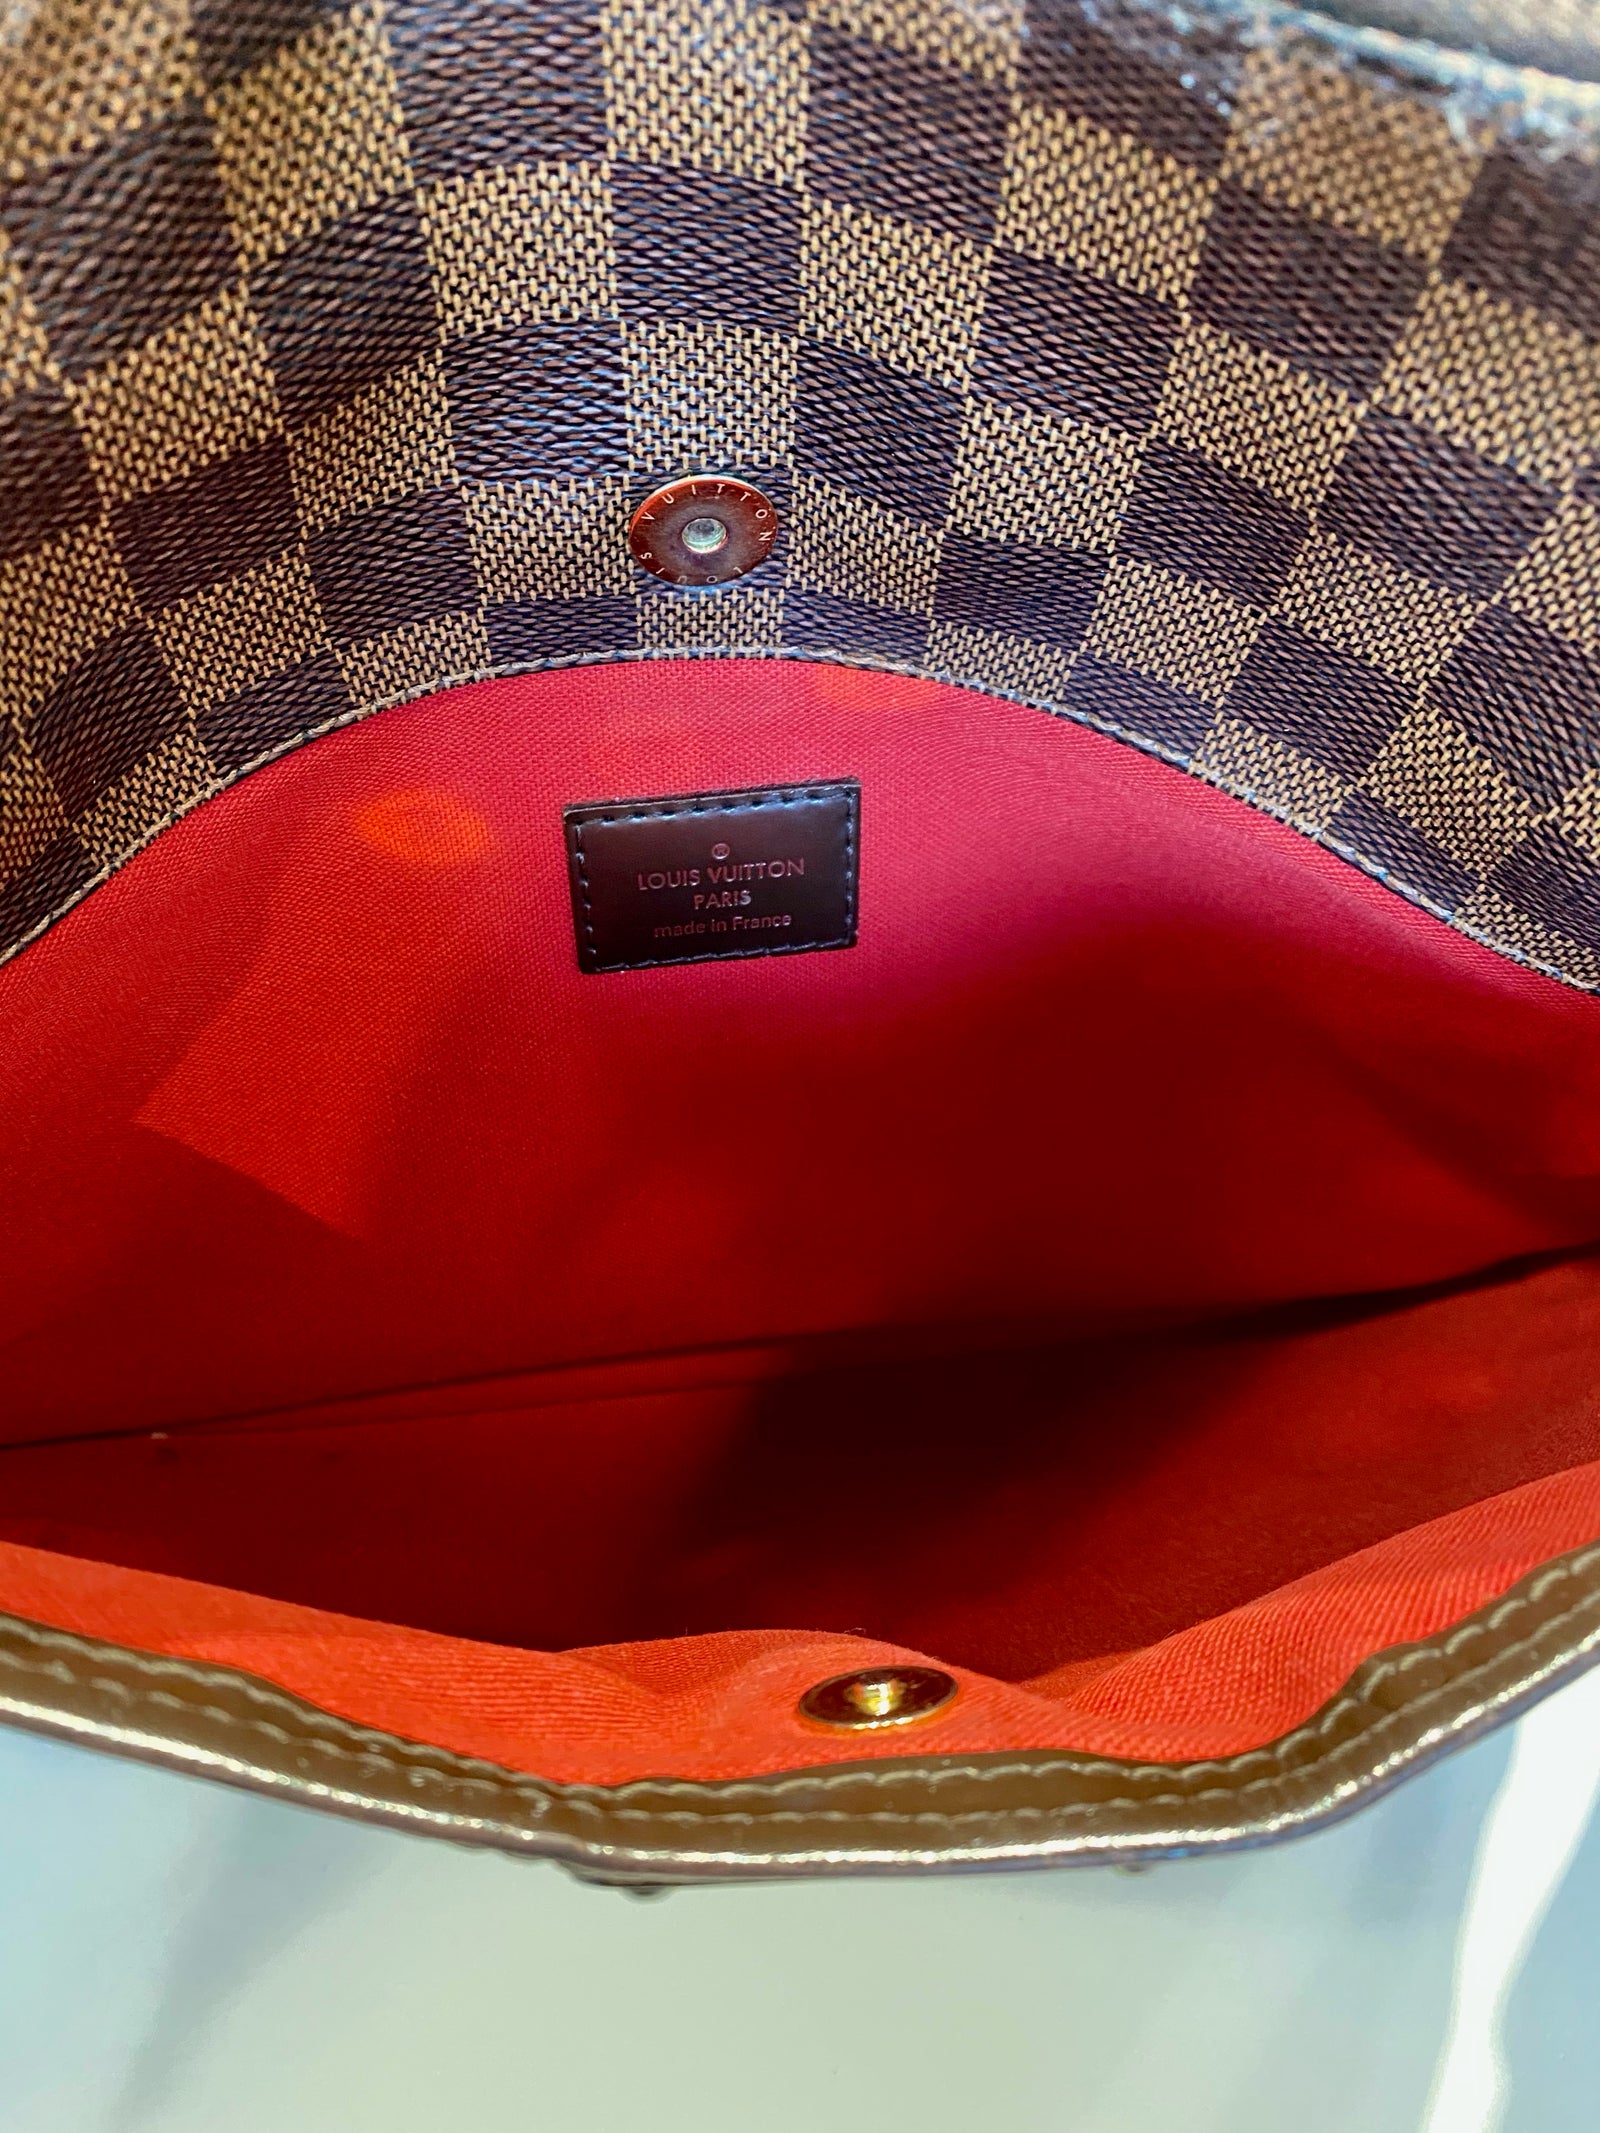 Louis Vuitton Damier Ebene Bloomsbury PM Bag